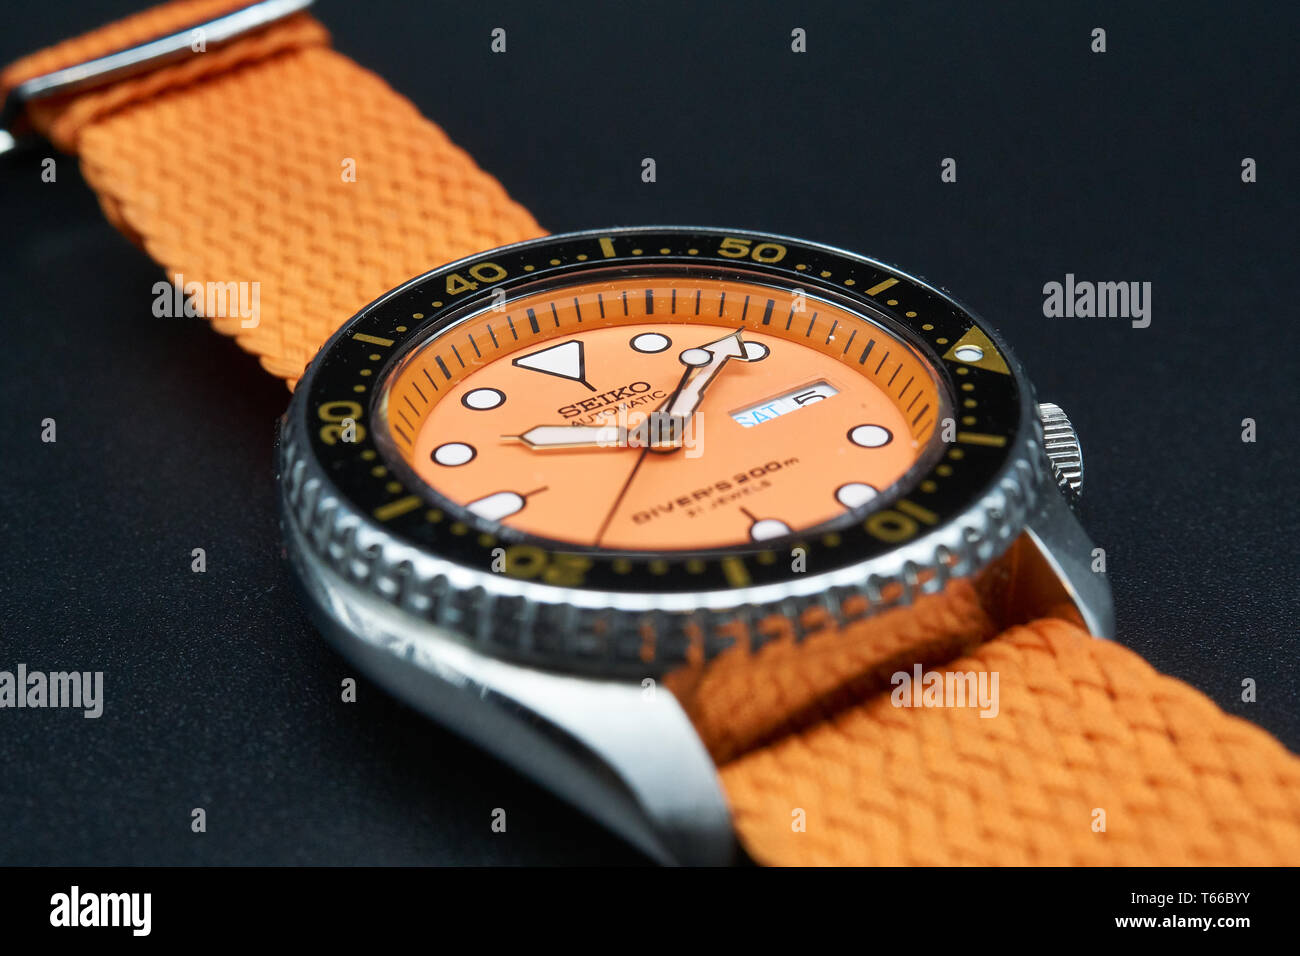 seiko skx011 orange dial Stock Photo - Alamy